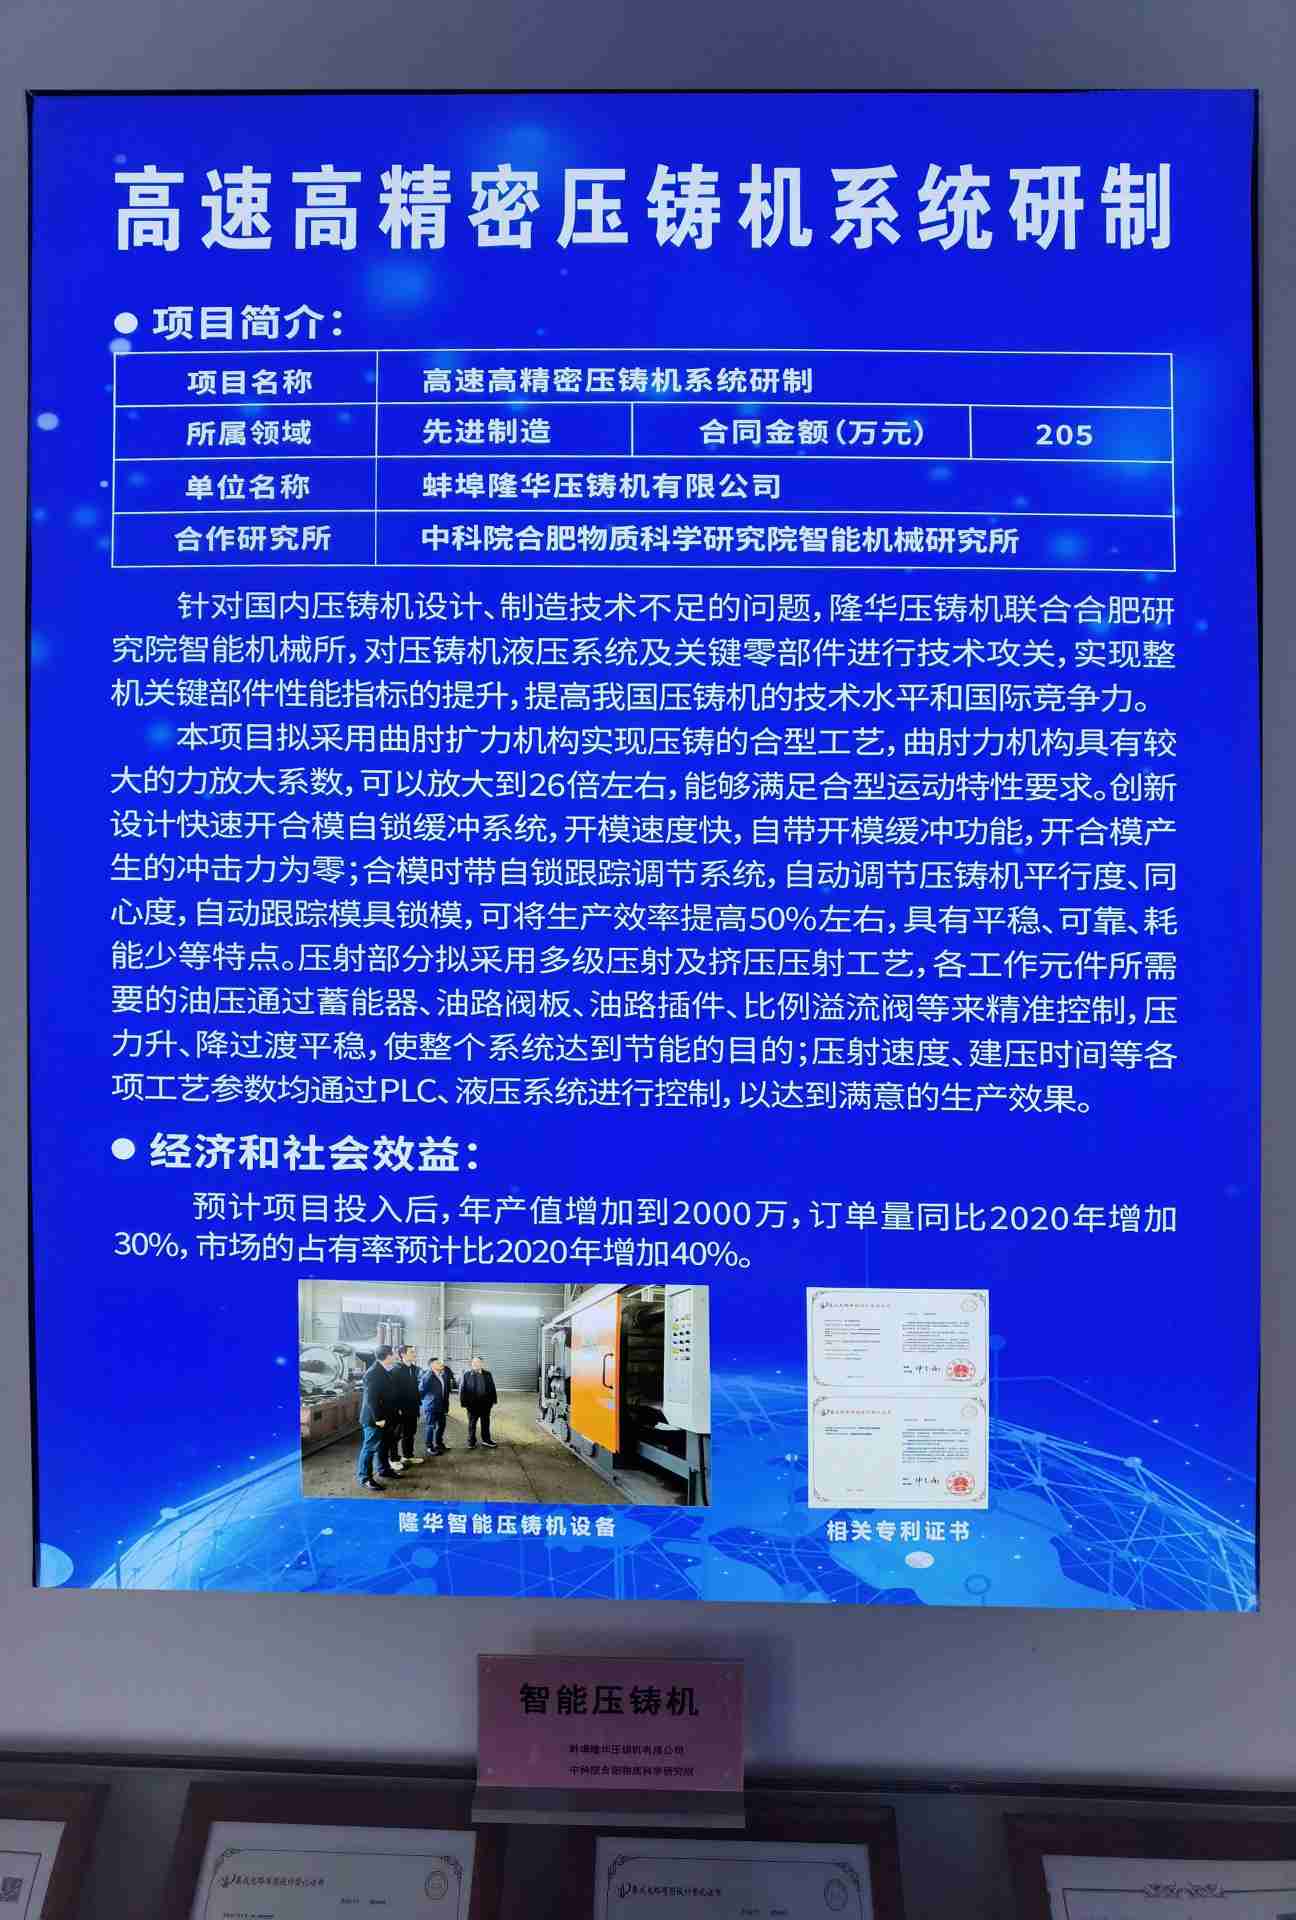 Chúc mừng dự án giữa công ty chúng tôi và Viện Khoa học Trung Quốc được triển khai suôn sẻ